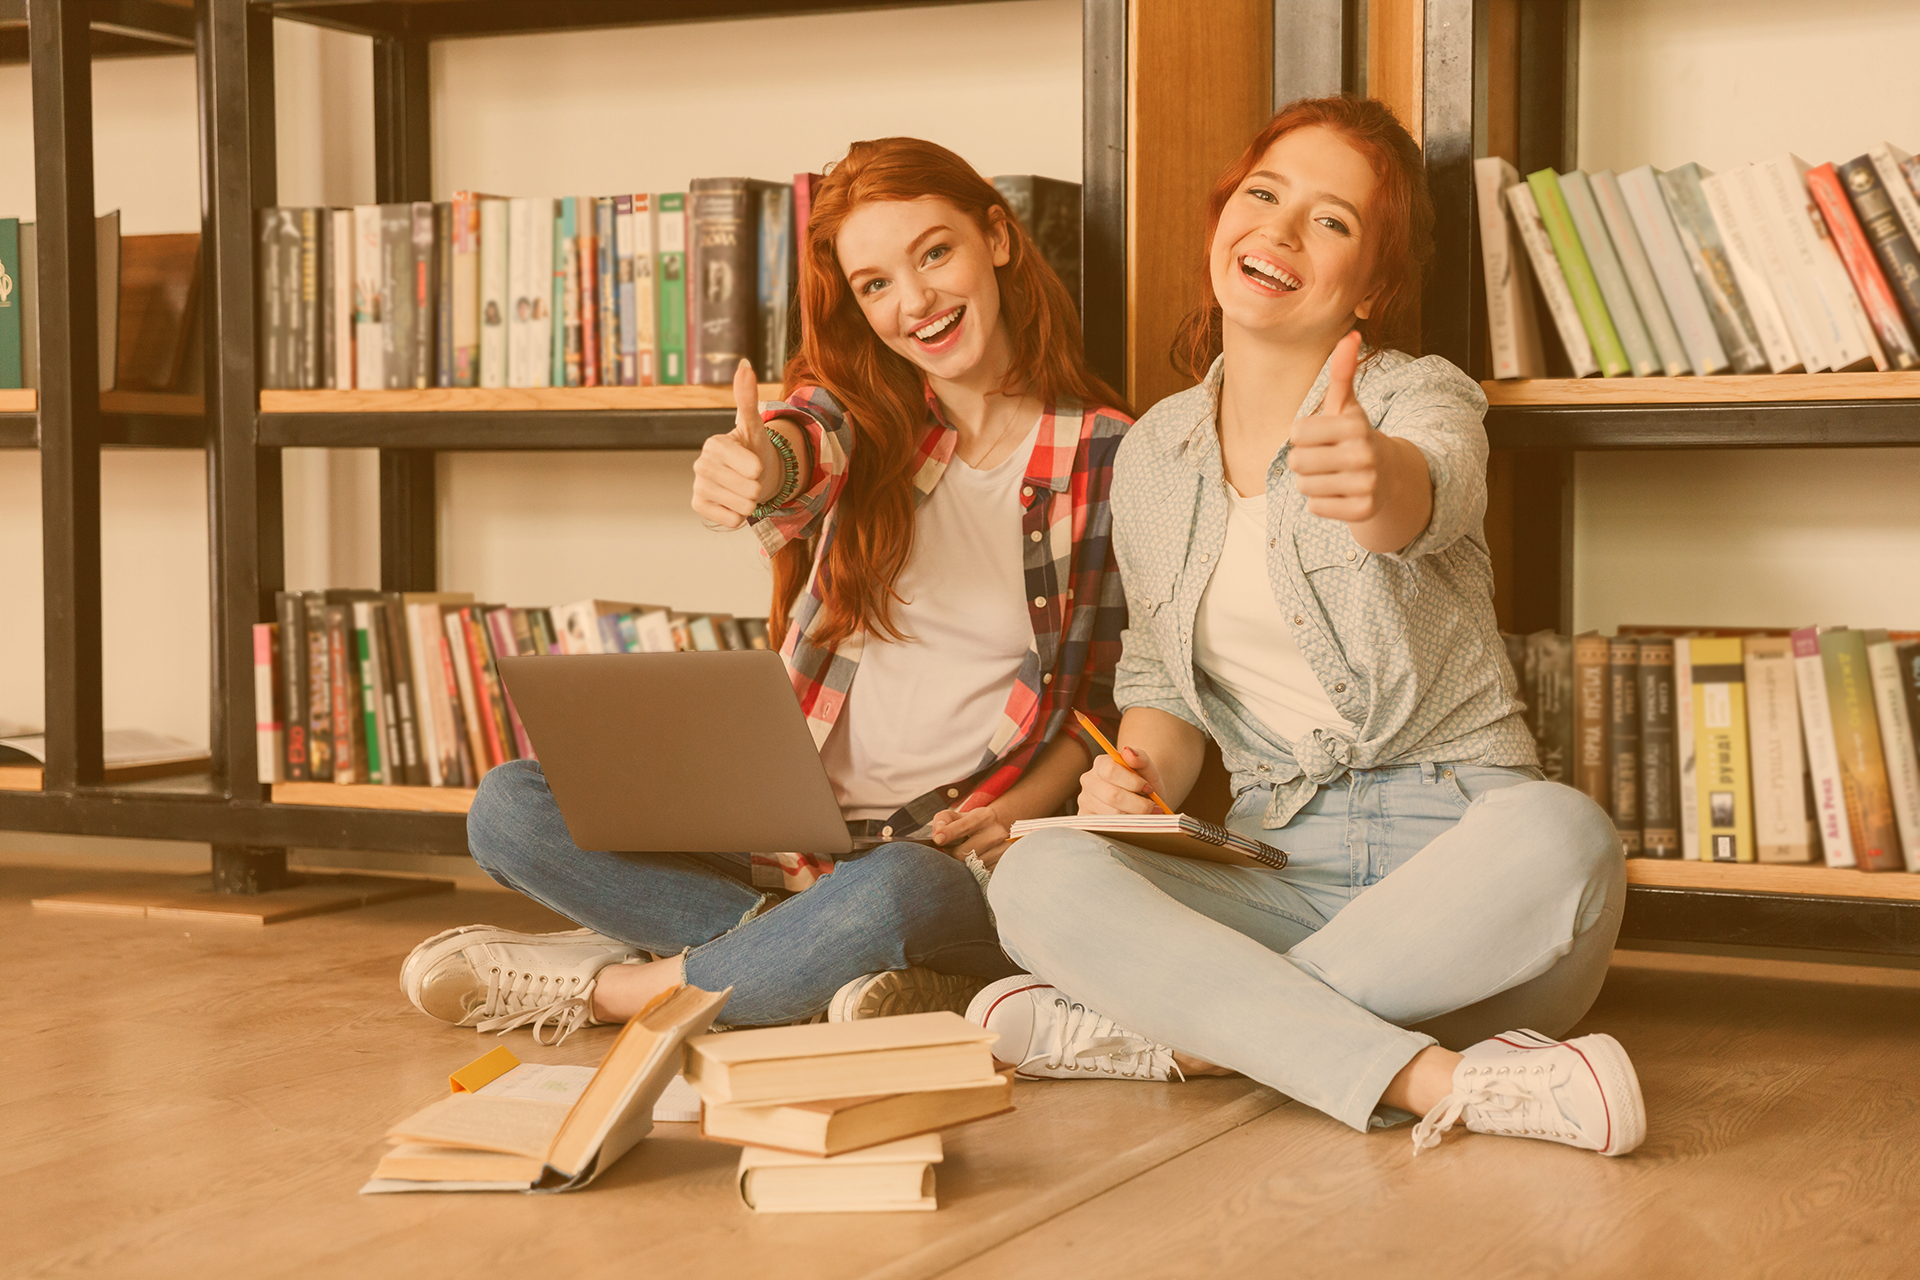 Zwei Jugendliche sitzen vor einem Bücherregal auf dem Boden und halten eine Daumen hoch